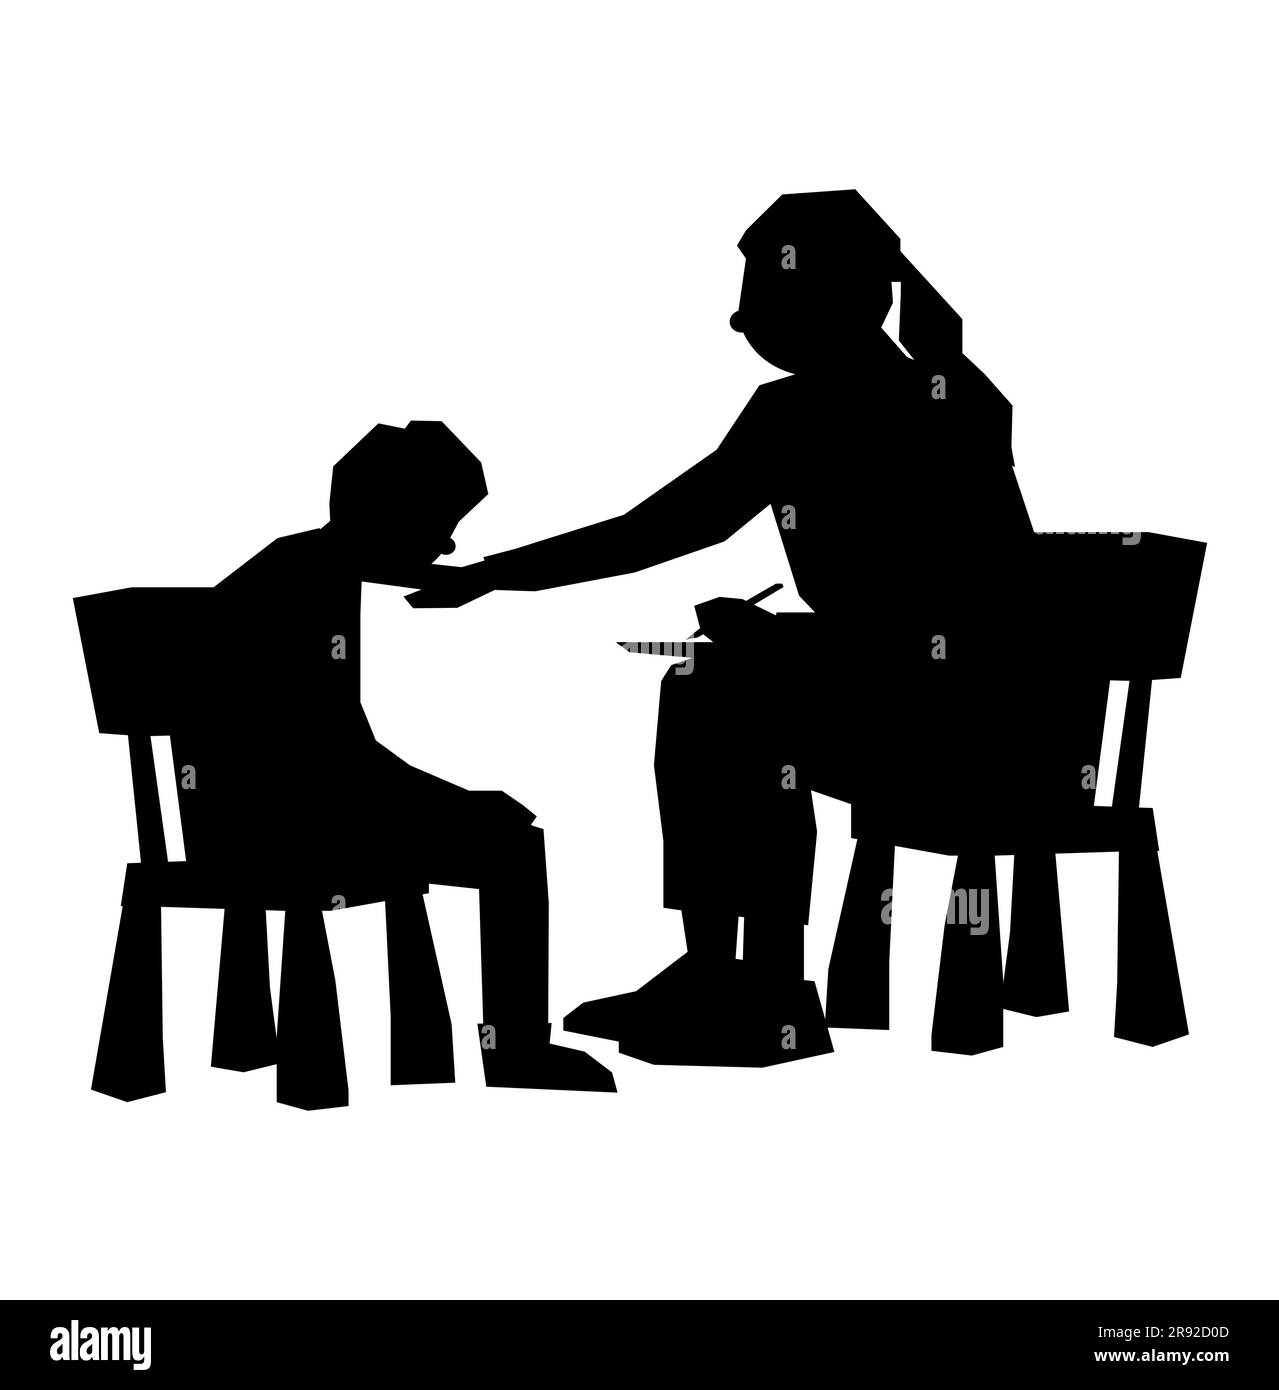 Schwarze Silhouette einer Psychologin, die mit einem Kind spricht, Vektor isoliert auf weißem Hintergrund, Beratung eines Kindes Stock Vektor